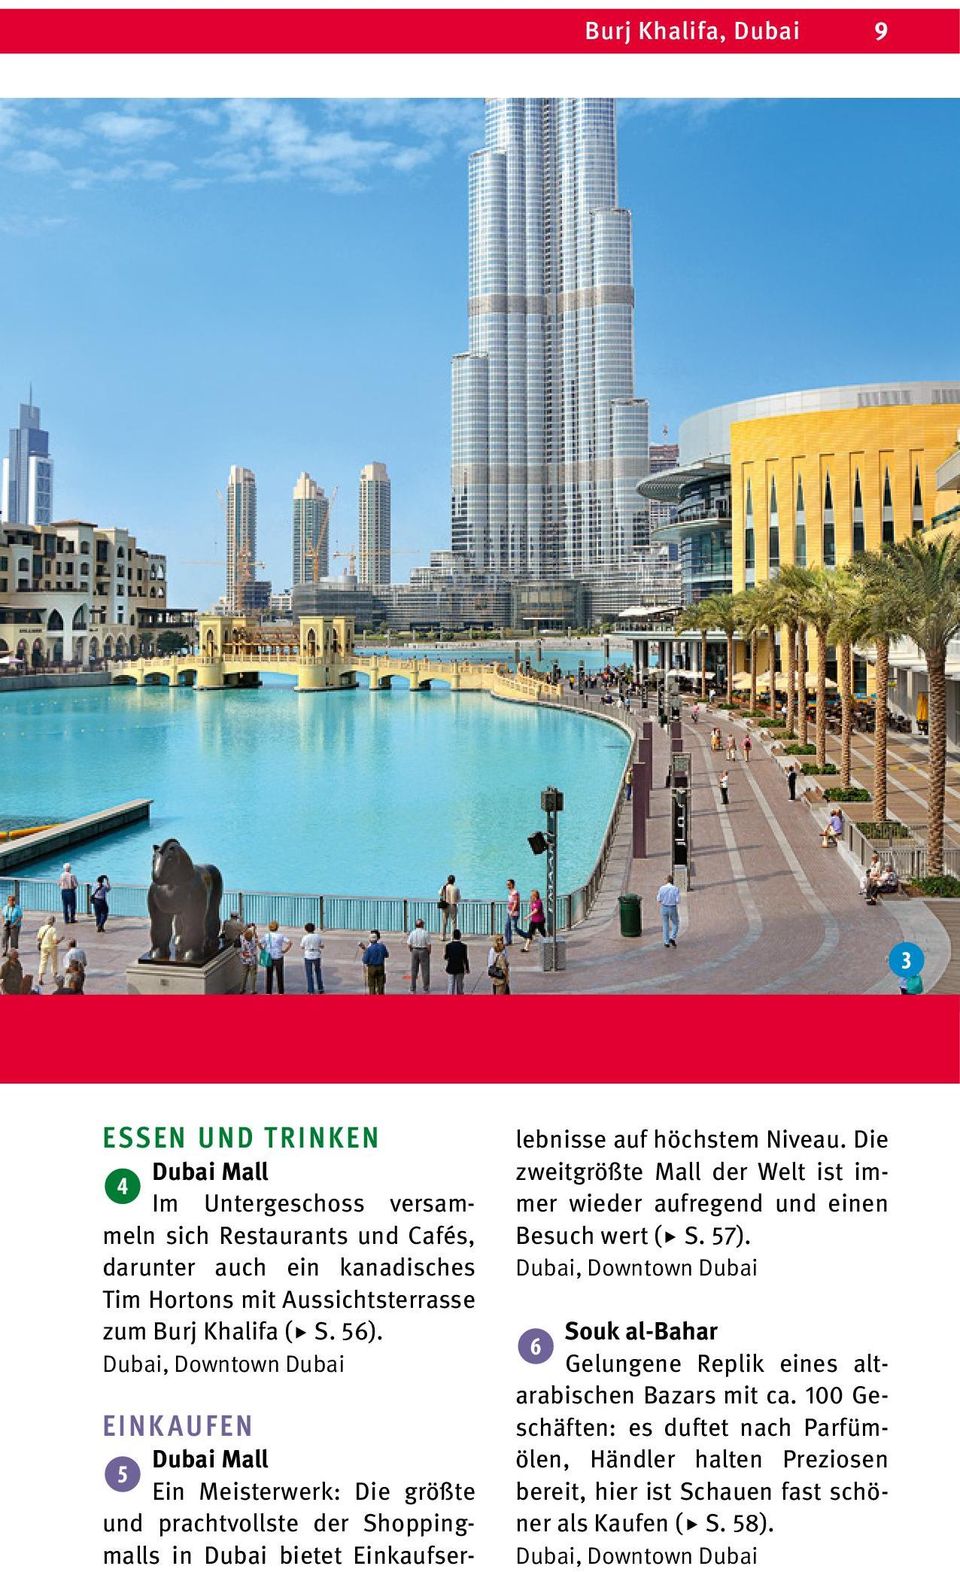 Dubai, Downtown Dubai EINKAUFEN Dubai Mall 5 Ein Meisterwerk: Die größte und prachtvollste der Shoppingmalls in Dubai bietet Einkaufserlebnisse auf höchstem Niveau.